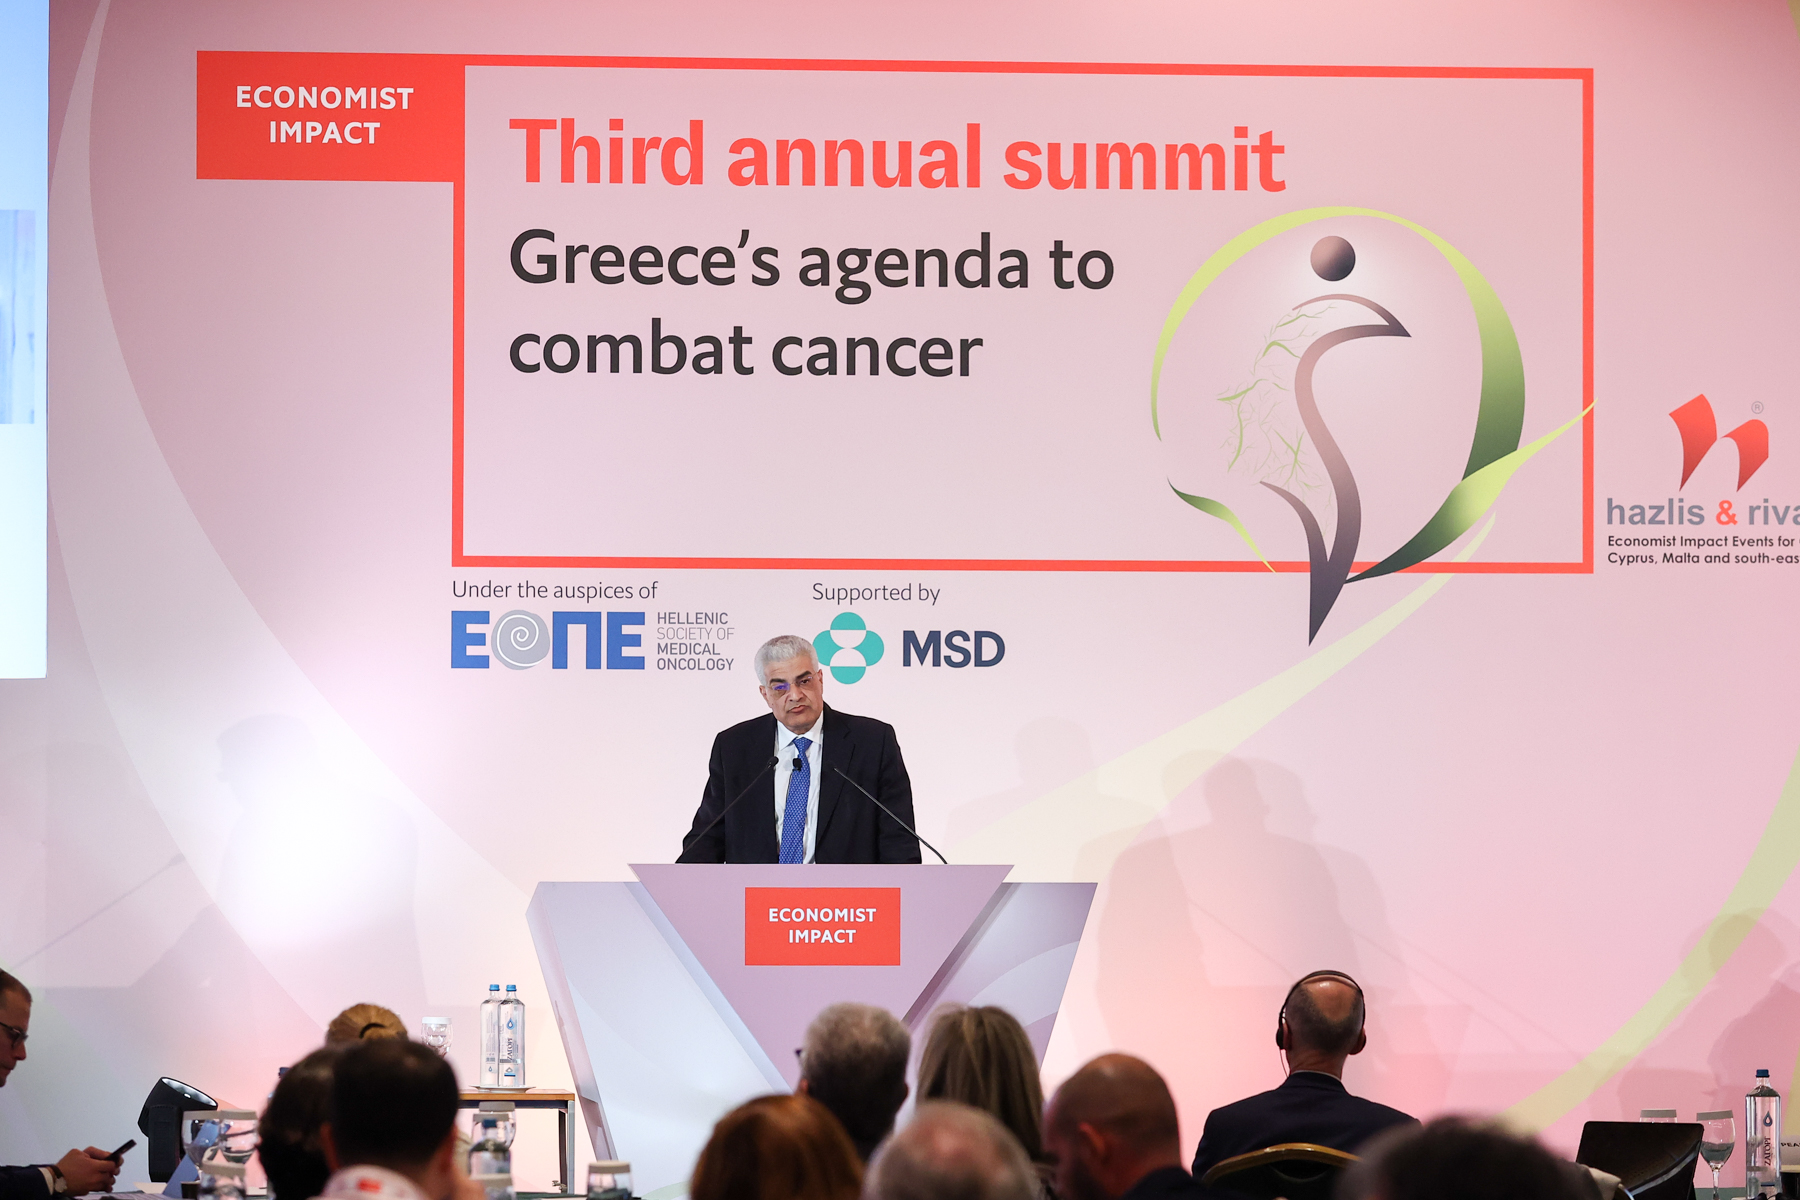 Συμμετοχή του Καθηγητή Κωνσταντίνου Συρίγου στο Third annual summit: Greece's agenda to combat cancer, που διοργανώθηκε από το Economist